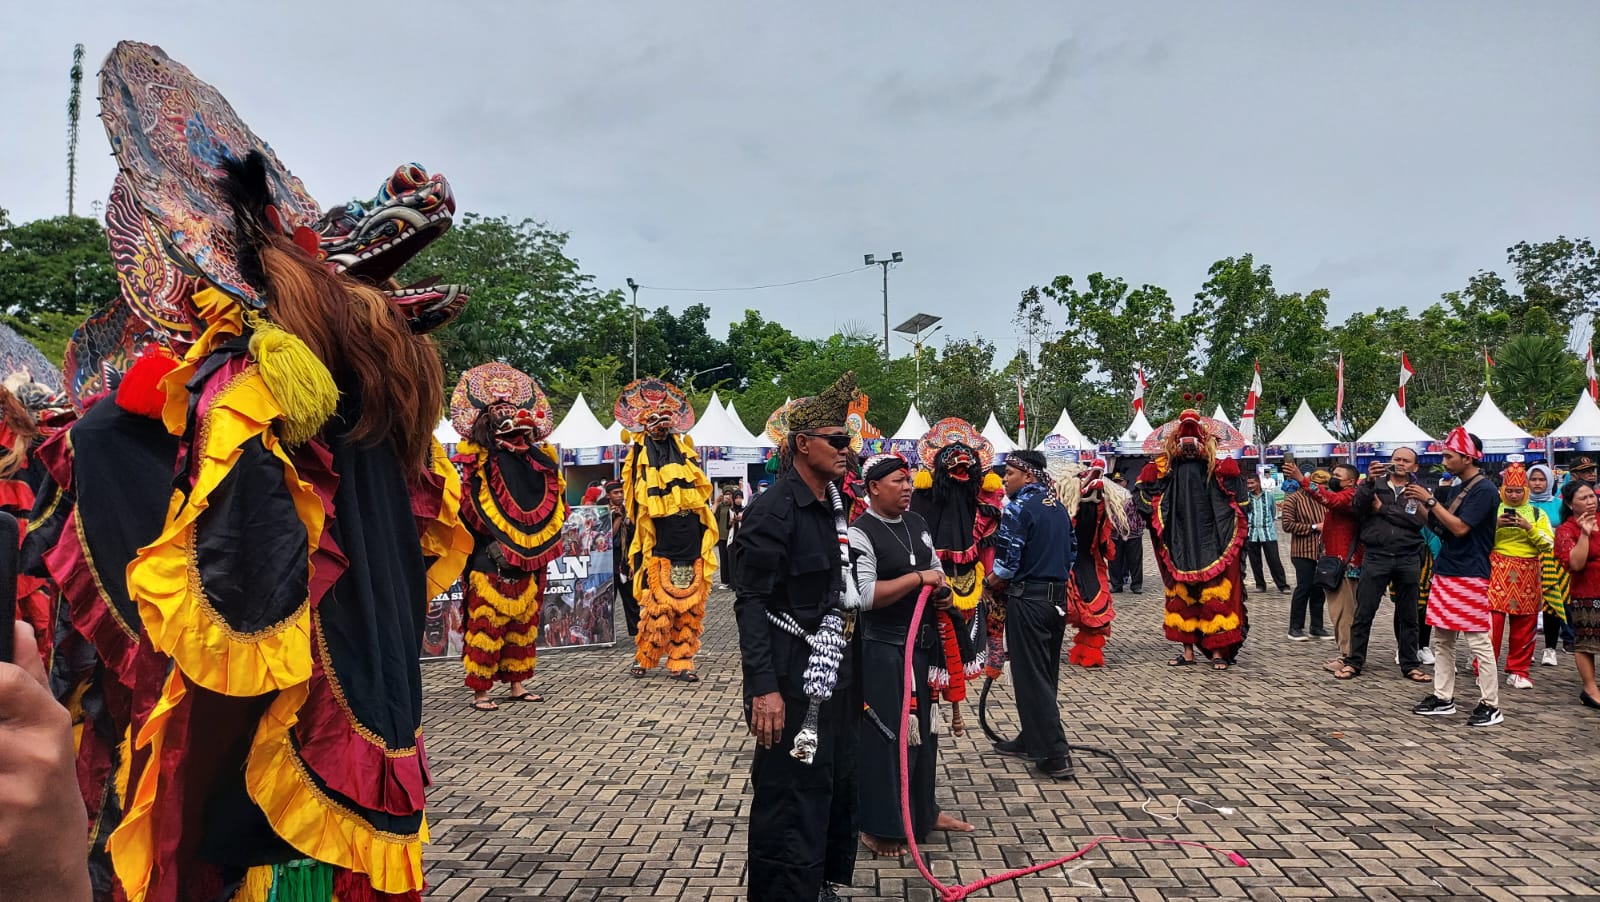 Atraksi singo barong menyedot perhatian para penonton saat upacara memperingati Hari Ulang Tahun (HUT) ke-15 Kabupaten Kubu Raya, Minggu (17/7).